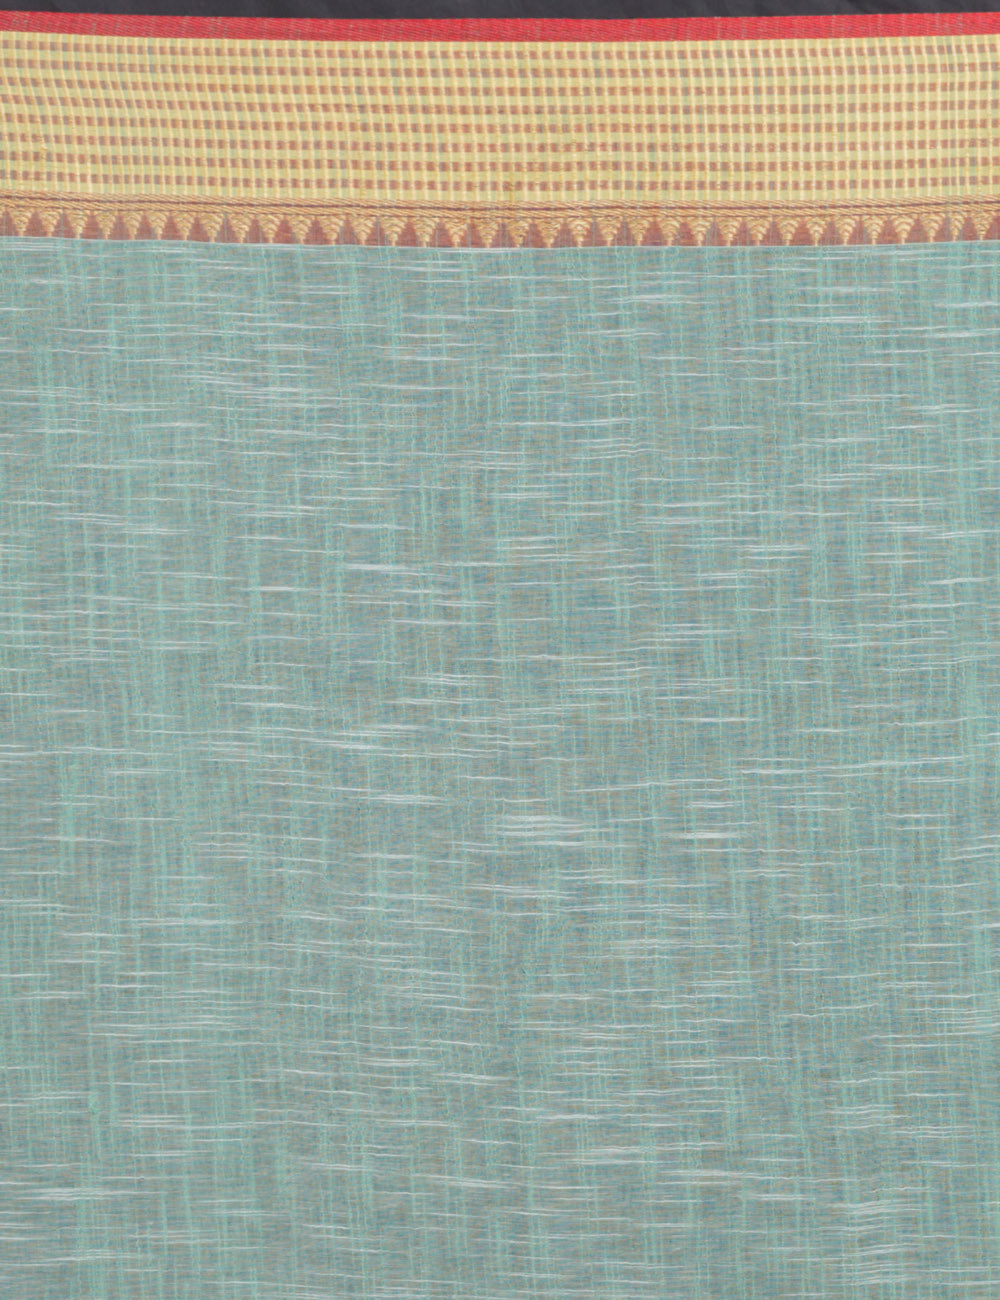 Pale Sky blue handwoven soft cotton sari